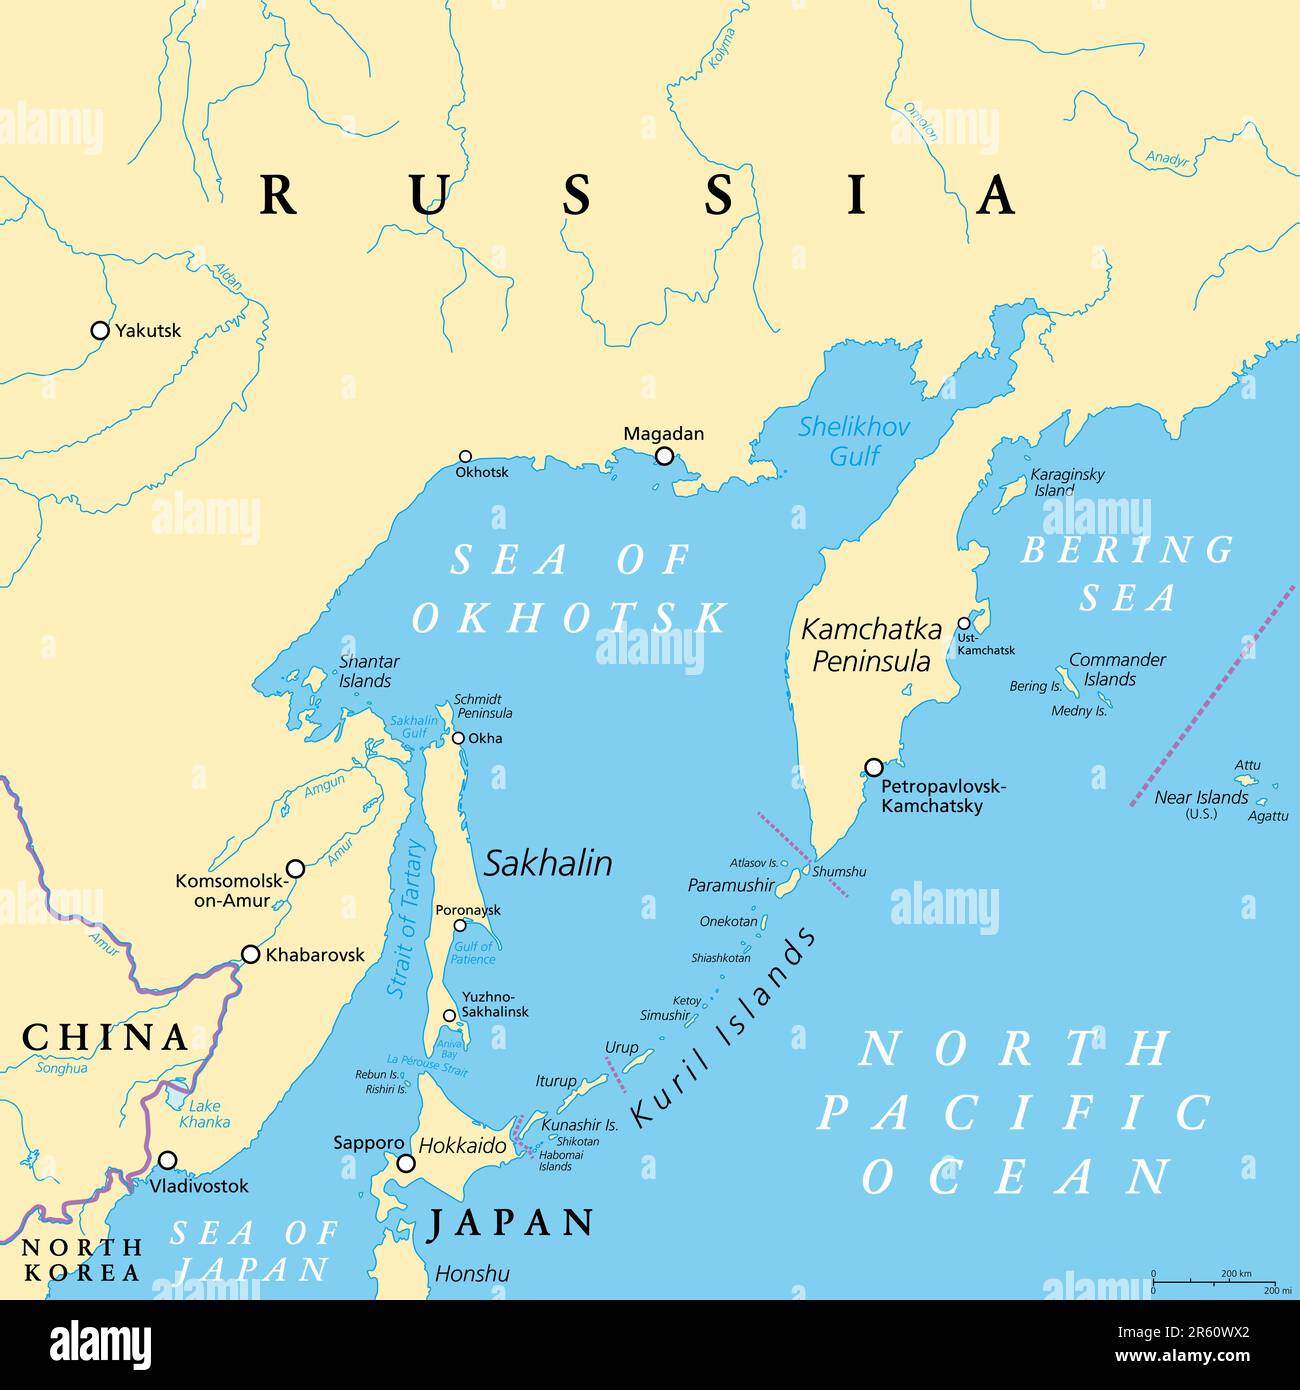 Mare di Okhotsk, mappa politica. Un mare marginale dell'Oceano Pacifico settentrionale, situato tra la Penisola di Kamchatka, le Isole Kuril, Hokkaido e Sakhalin. Foto Stock